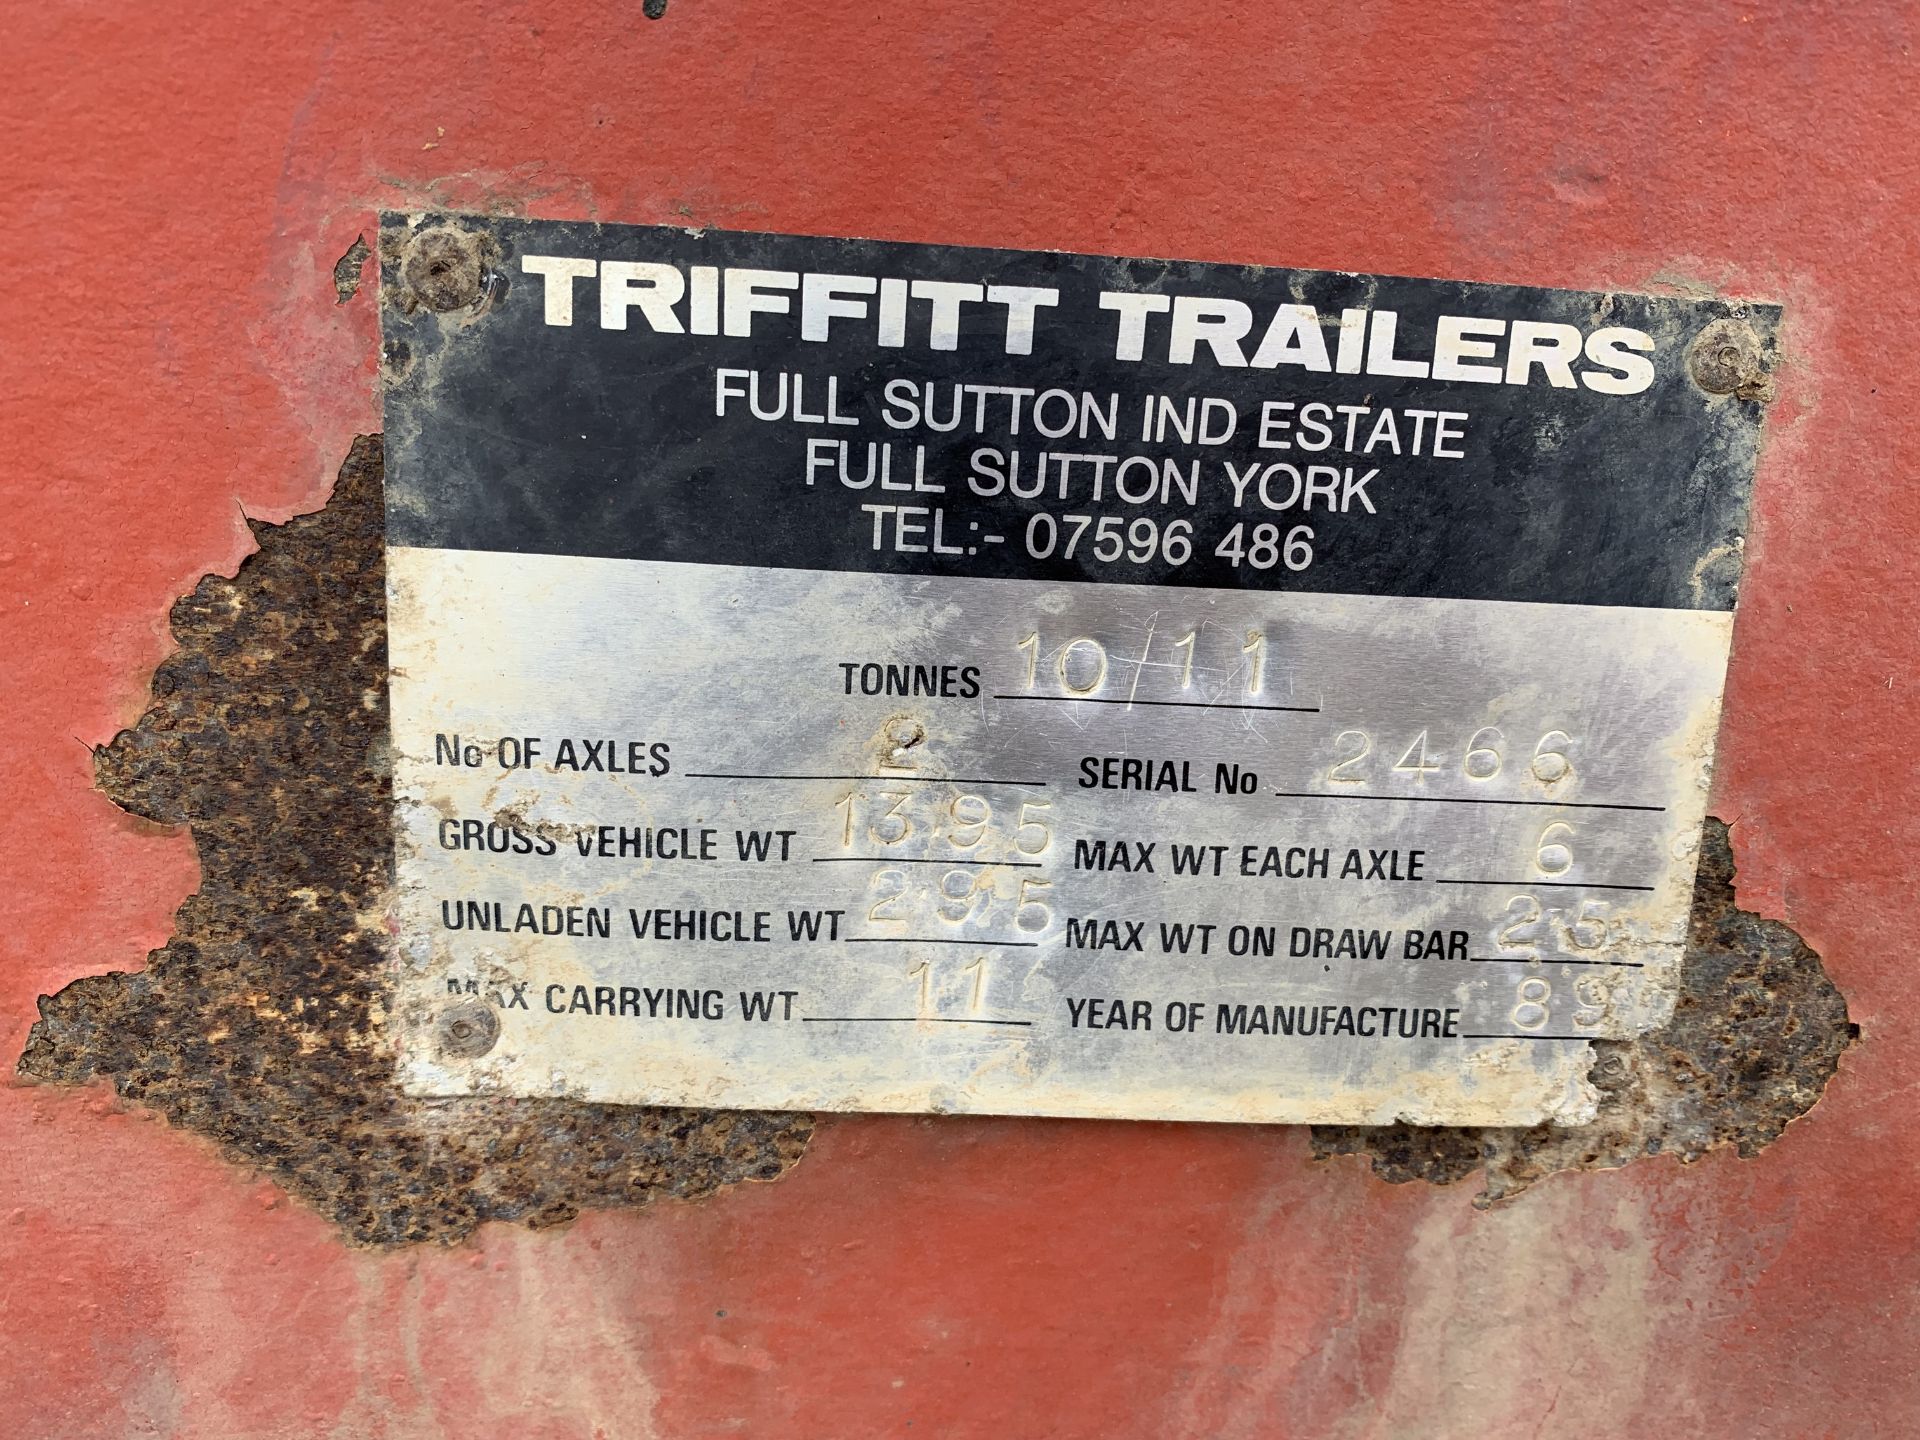 1989 Triffitt twin axle 10/11 ton corn trailer - Bild 2 aus 4